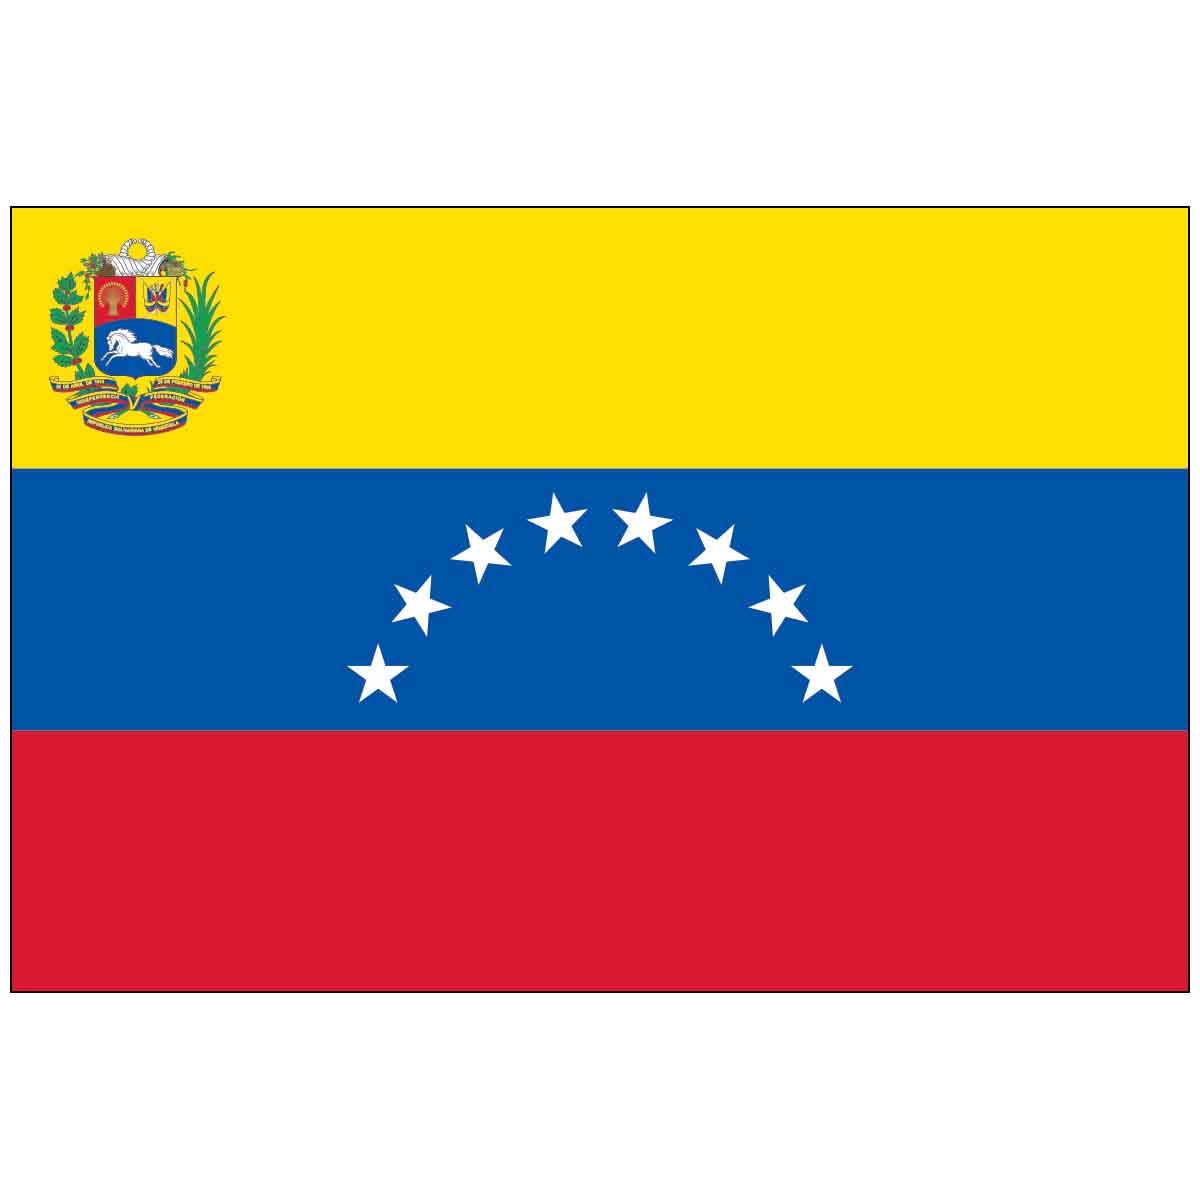 Venezuela with Seal (UN/OAS) World Flag